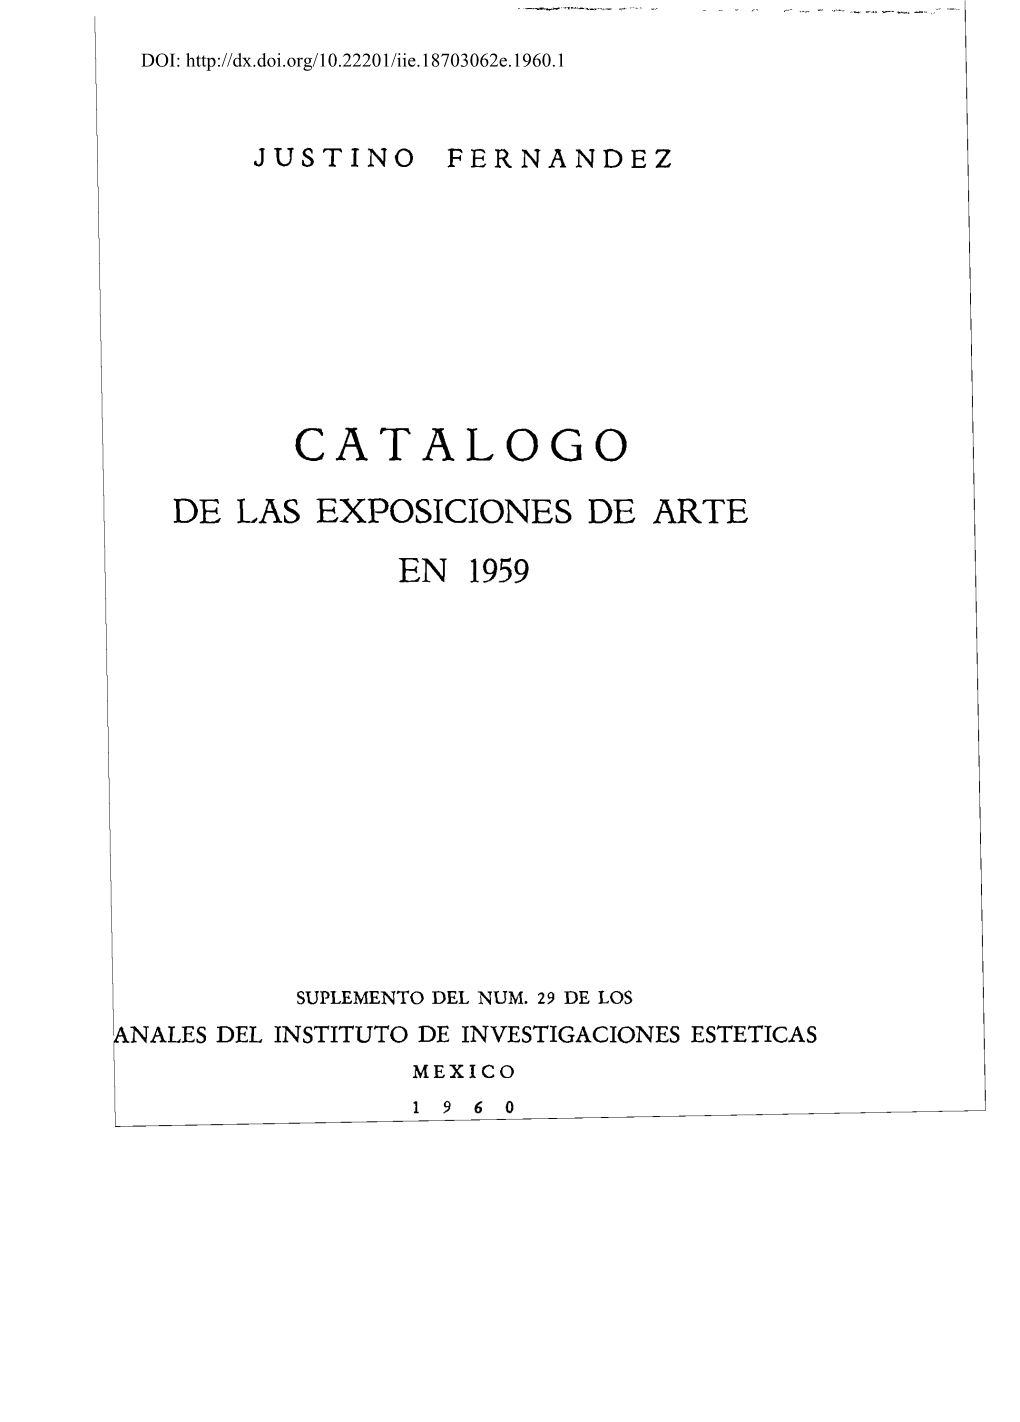 Catalogo De Las Exposiciones De Arte En 1959